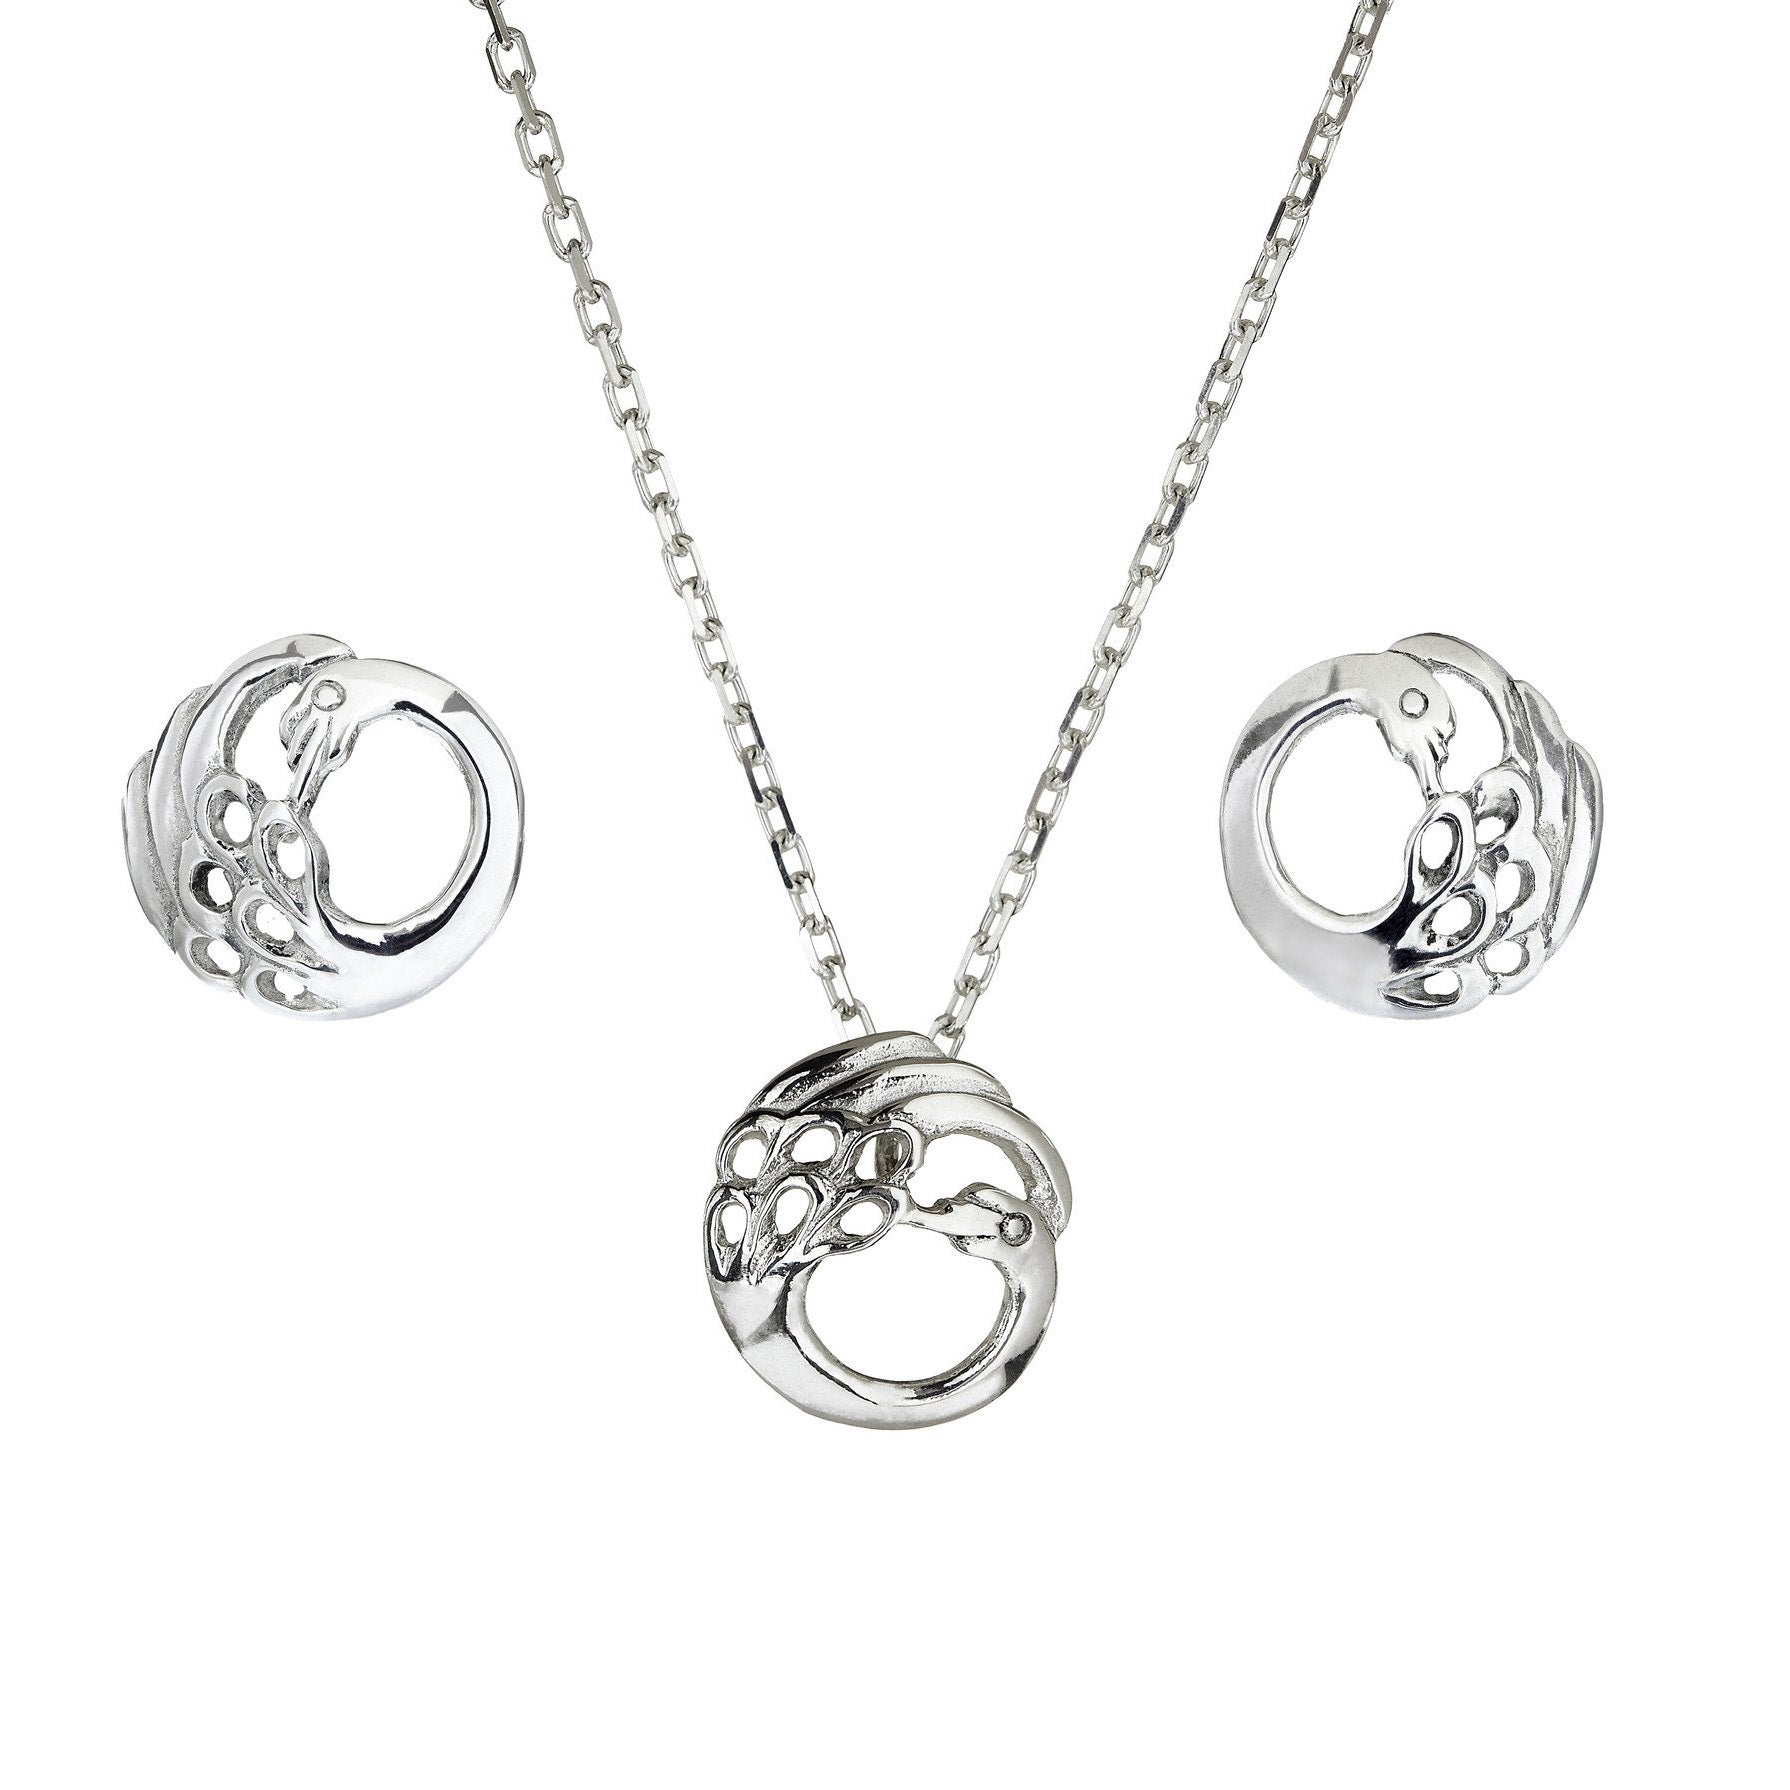 Swan Stud Earrings, Necklace & Pendant. A sterling silver  Irish Jewellery set.